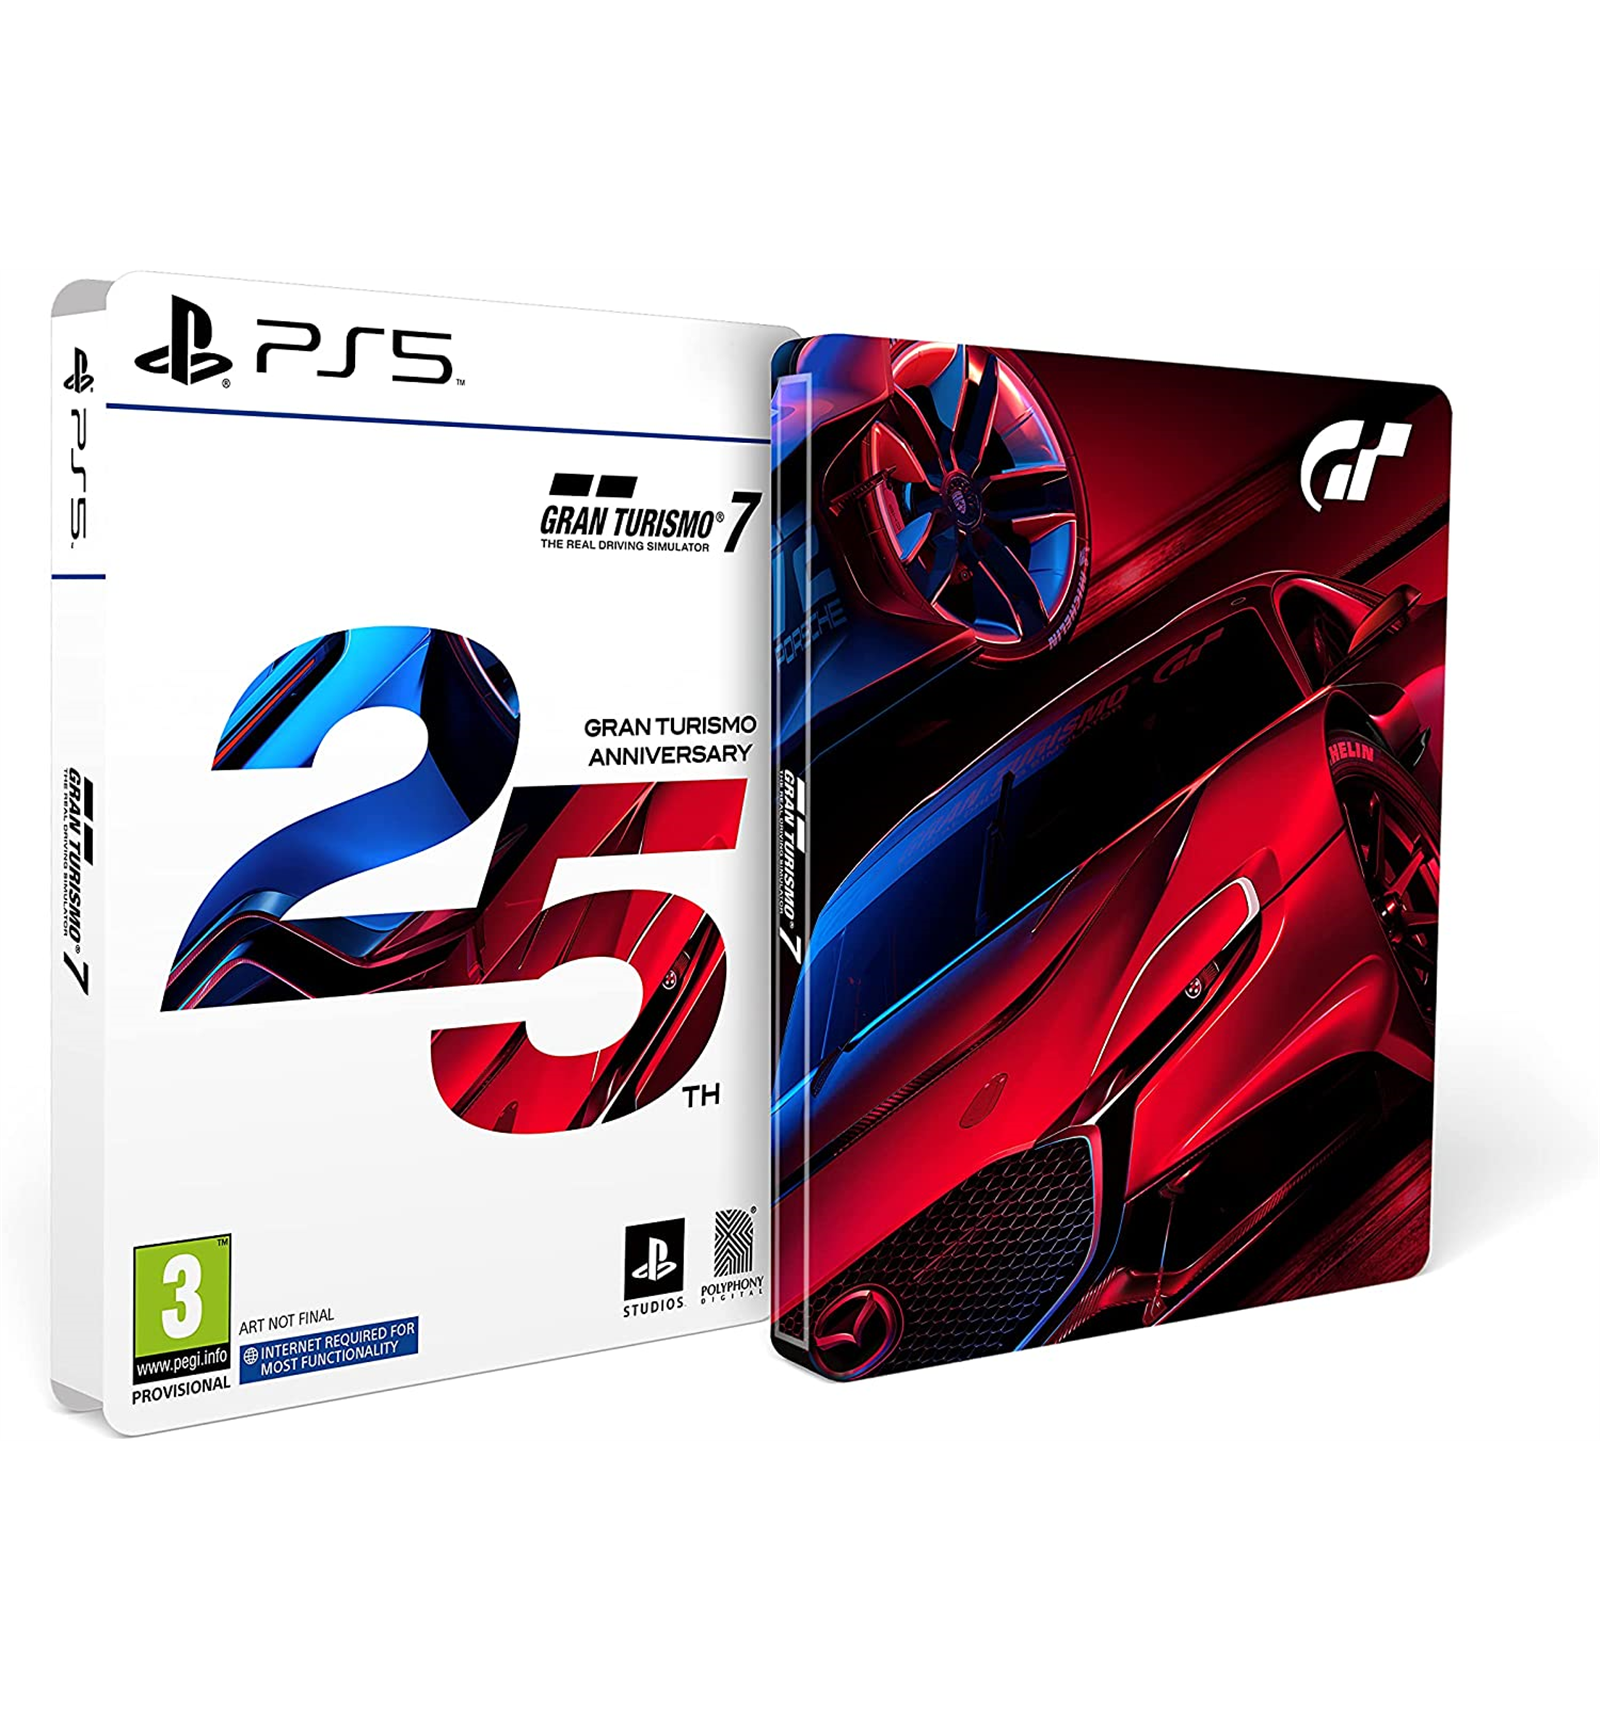 PS5 Gran Turismo 7 - 25th Anniversary Edition - DaxStore S.R.L.S.